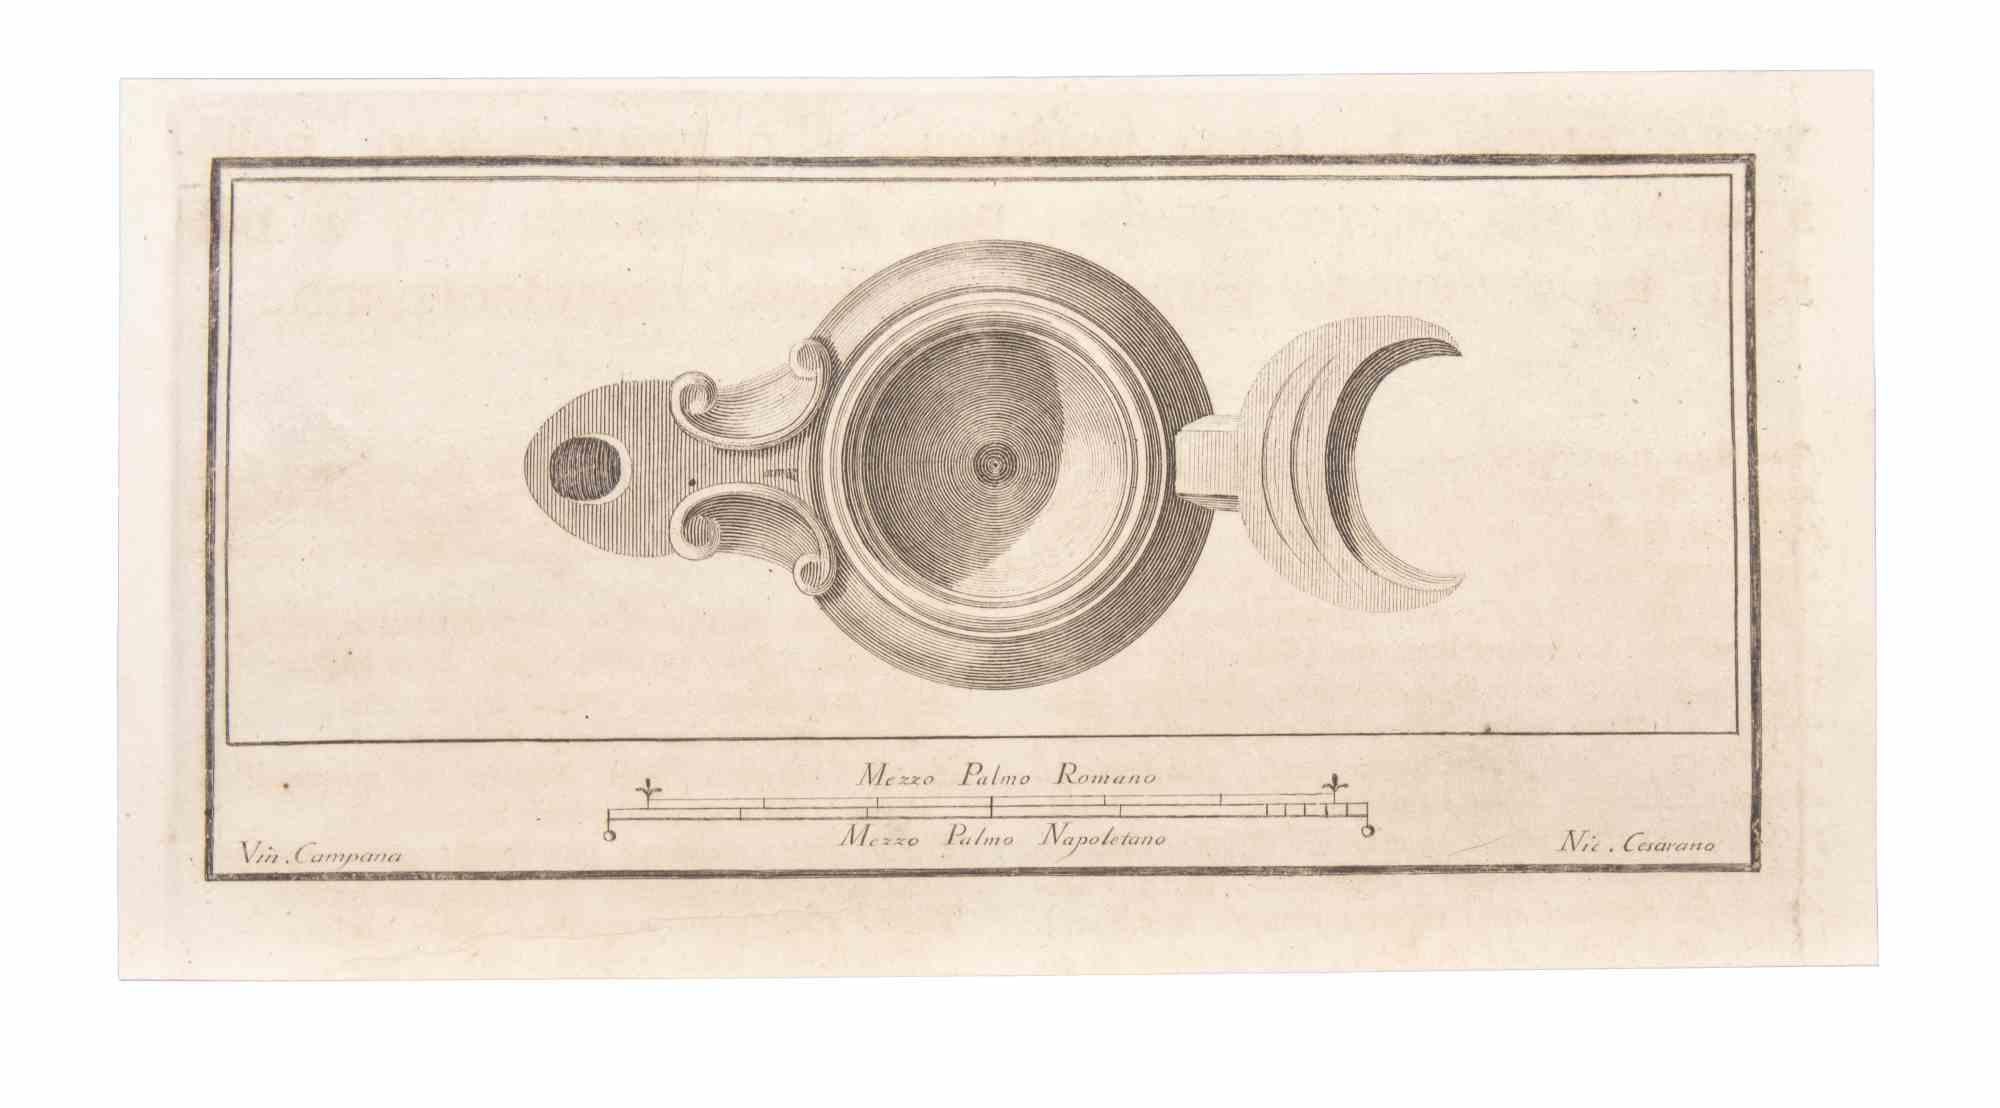 Lampe à huile est une gravure réalisée par Niccolò Cesarano (1740-1815).

La gravure appartient à la suite d'estampes "Antiquités d'Herculanum exposées" (titre original : "Le Antichità di Ercolano Esposte"), un volume de huit gravures des